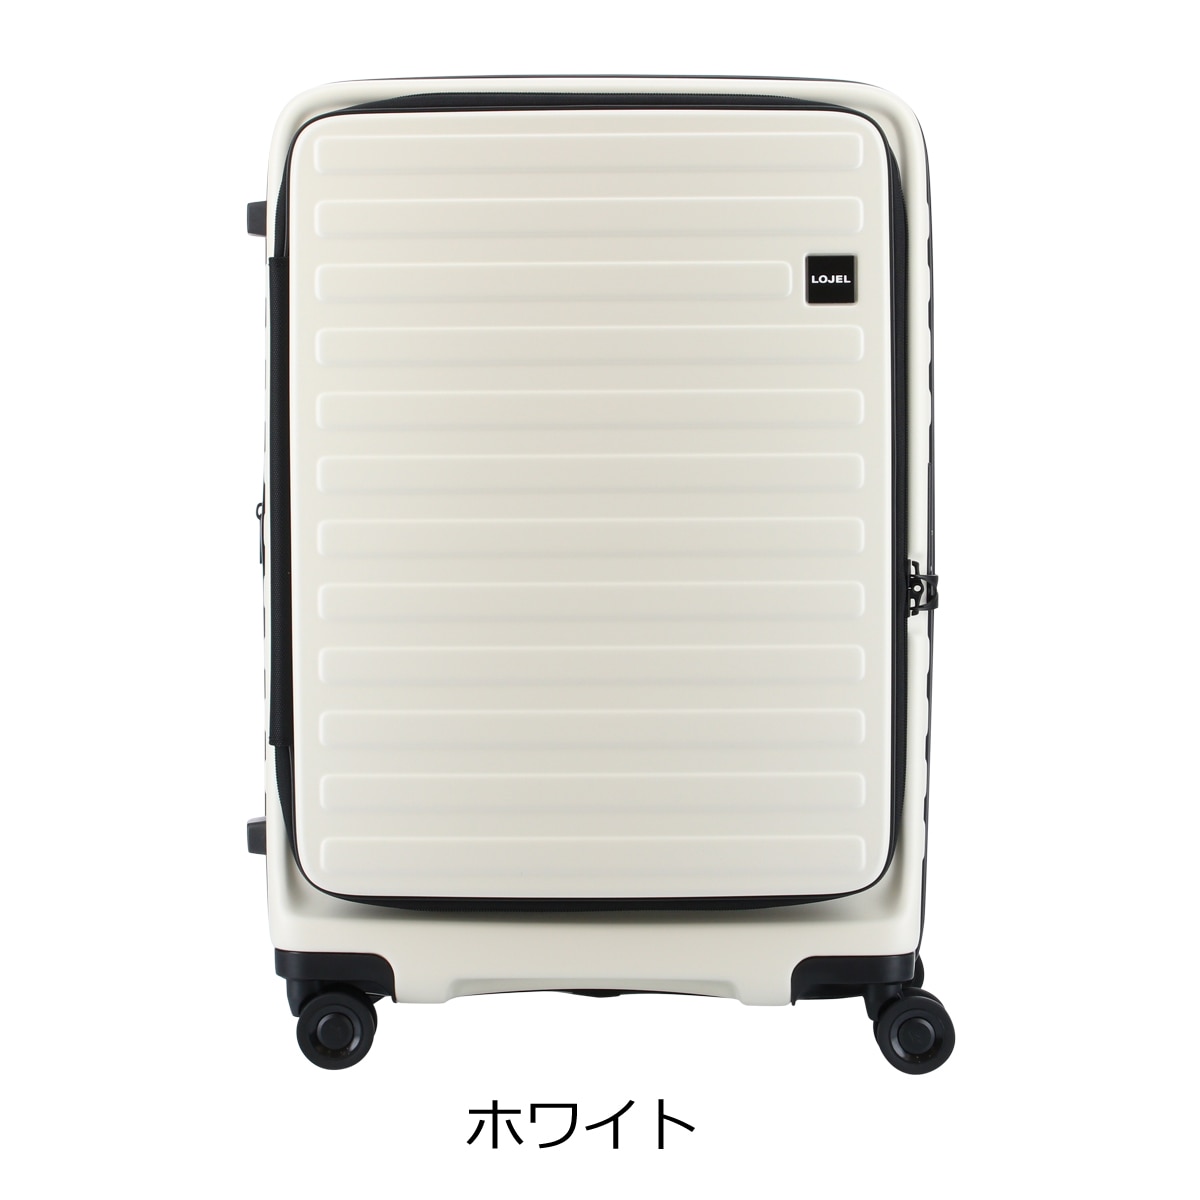 ロジェール LOJEL スーツケース CUBO-M 62cm リブ キャリーケース キャリーバッグ ビジネスキャリー 拡張機能 エキスパンダブル  双輪キャスター TSAロック搭載